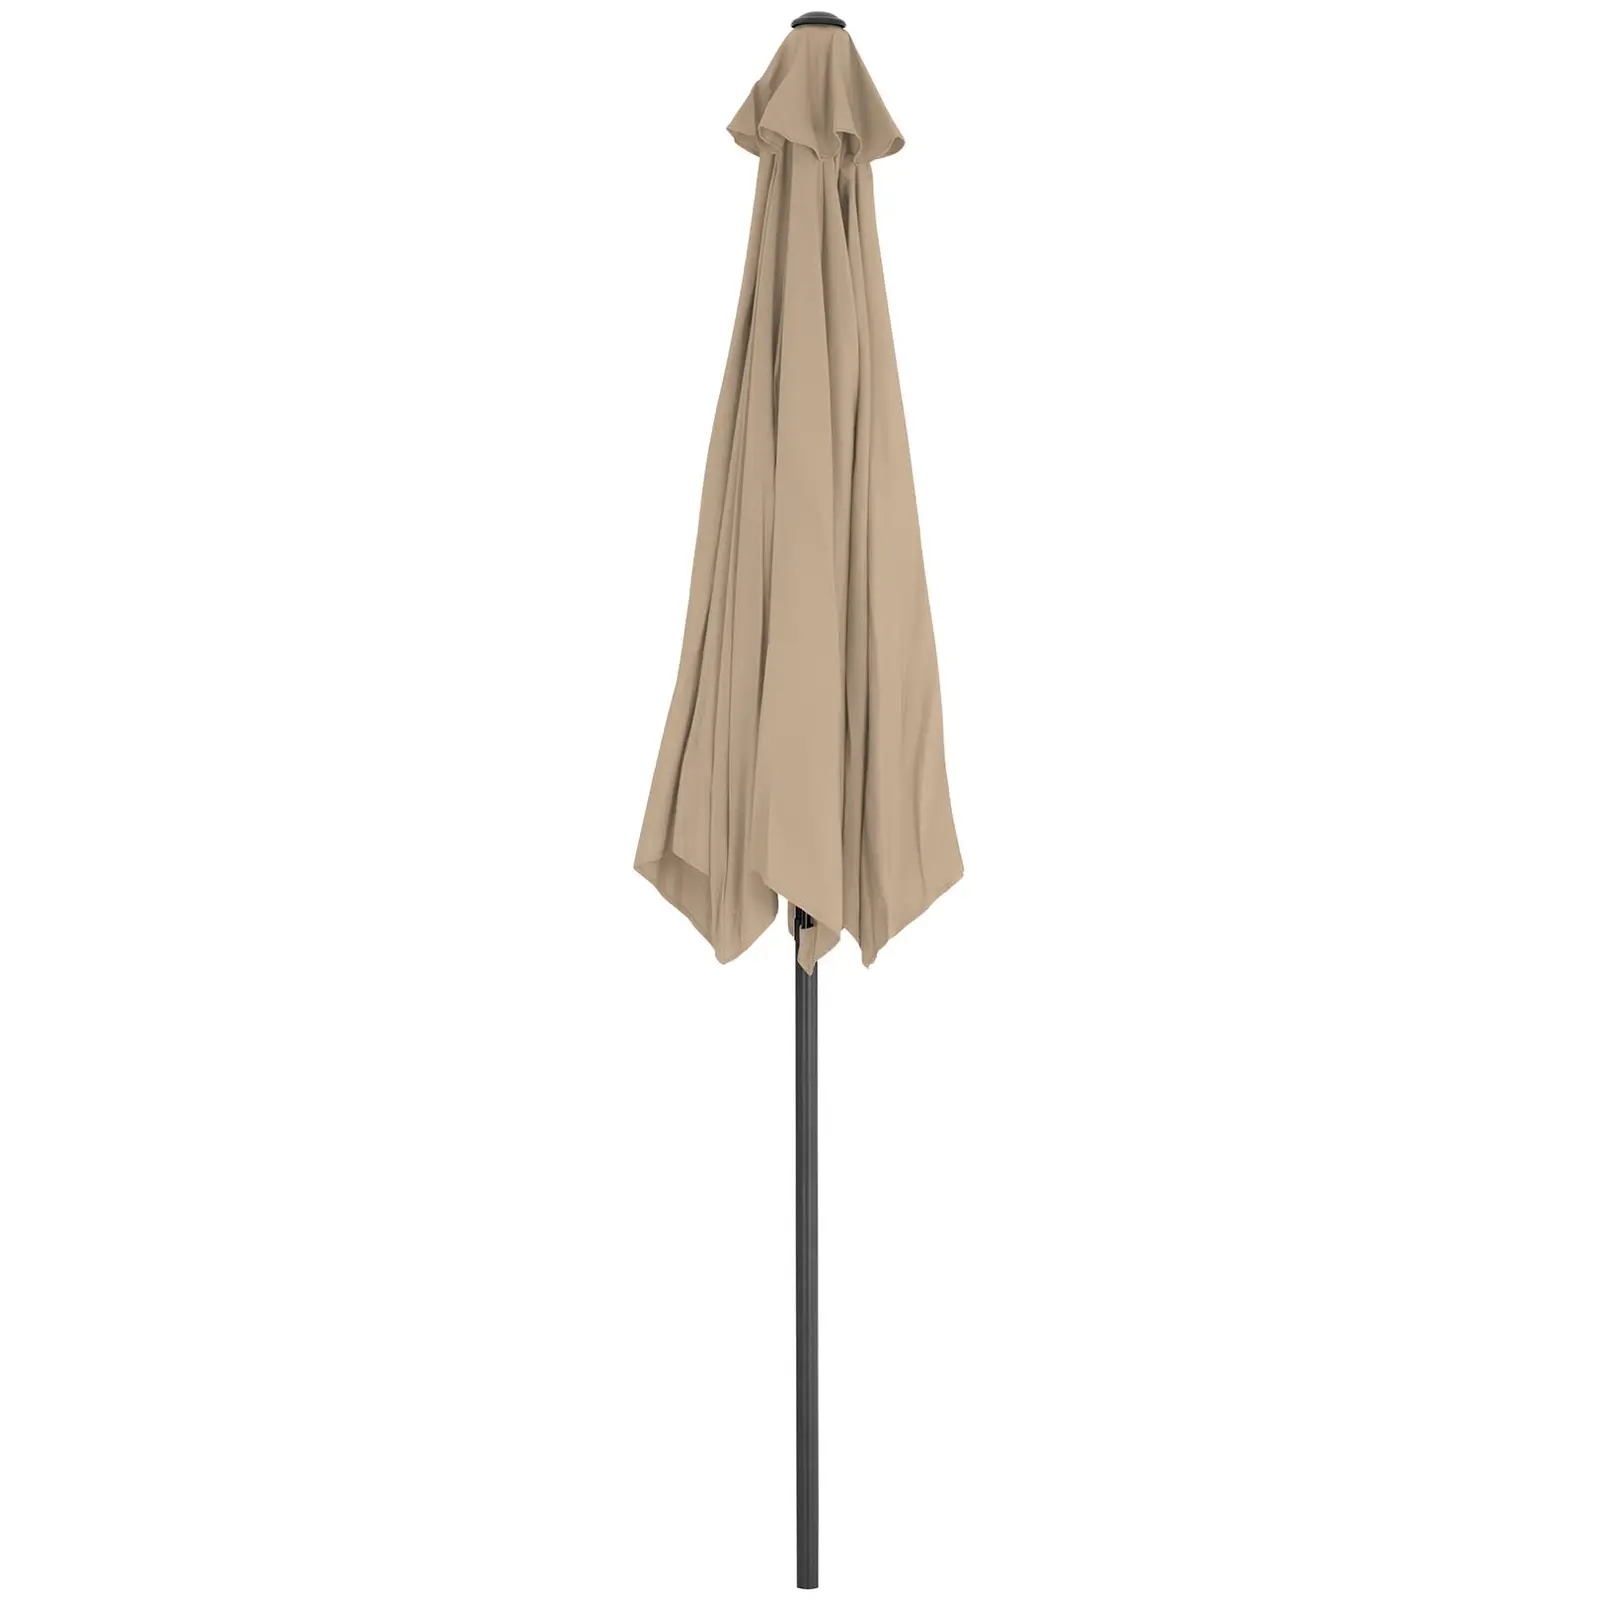 Occasion Demi parasol – Crème - Pentagone - 270 x 135 cm